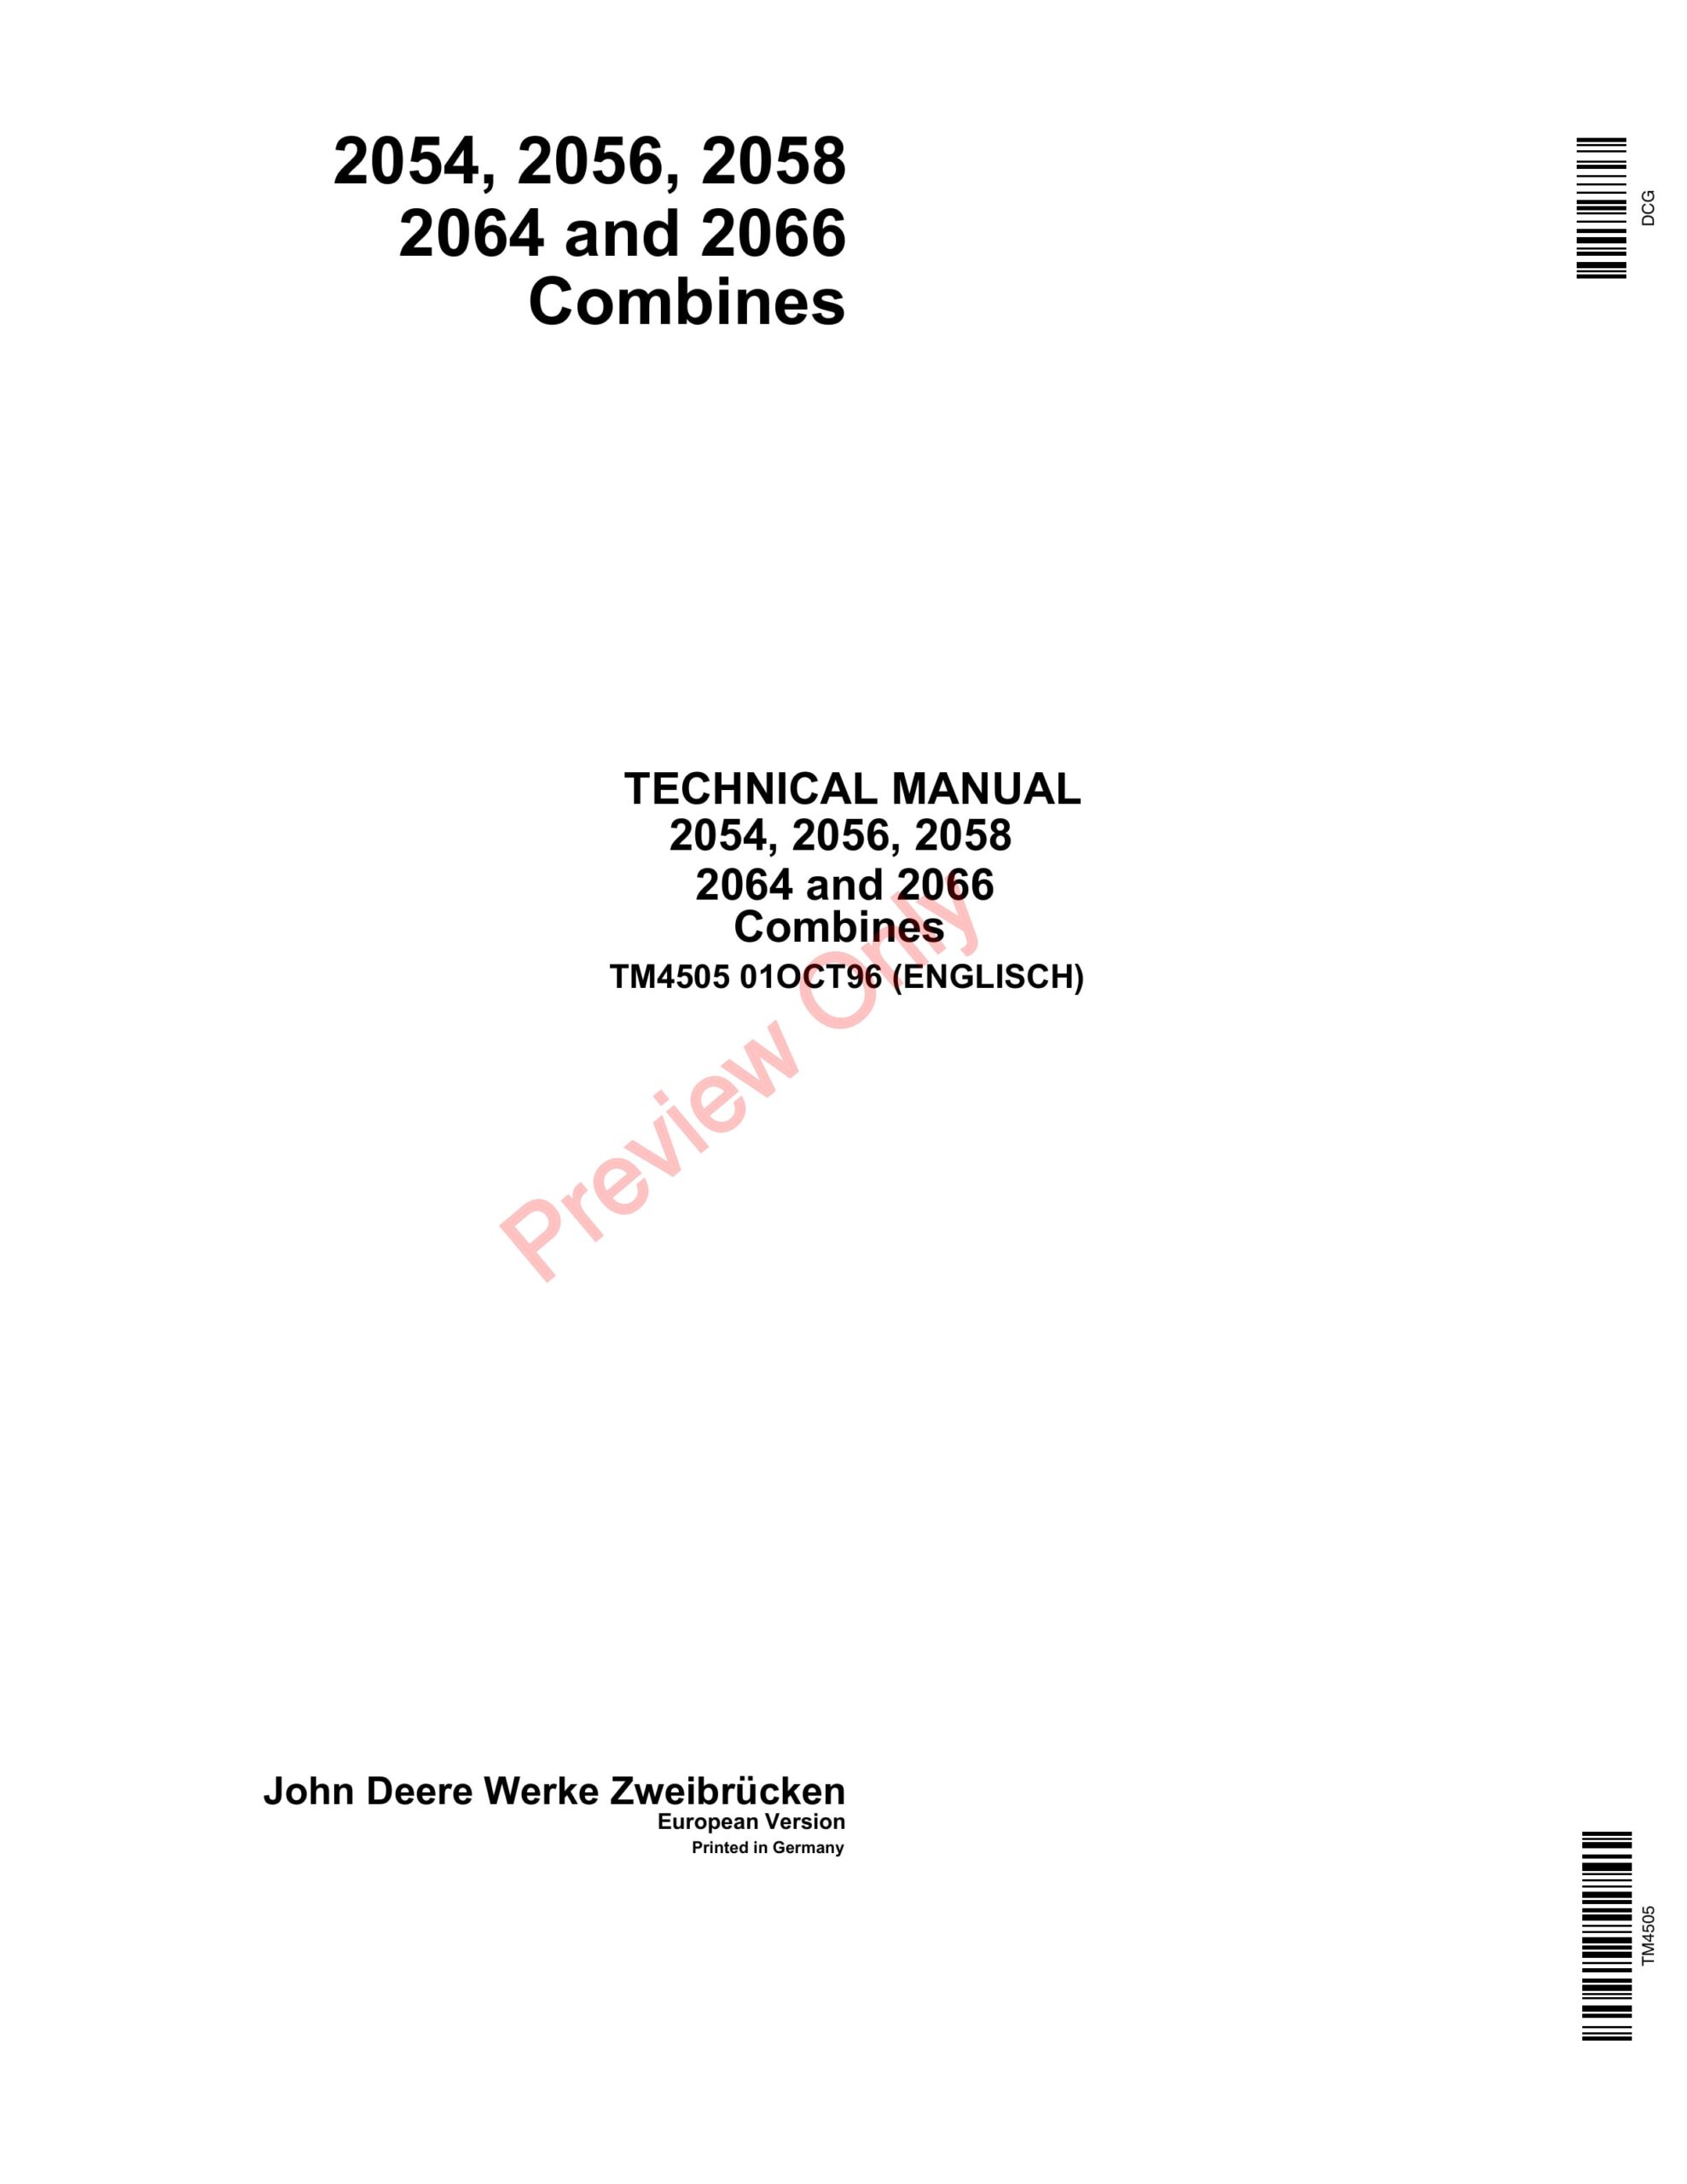 John Deere 2054, 2056, 2058, 2064, 2066 Combines Technical Manual TM4505 01OCT96-1